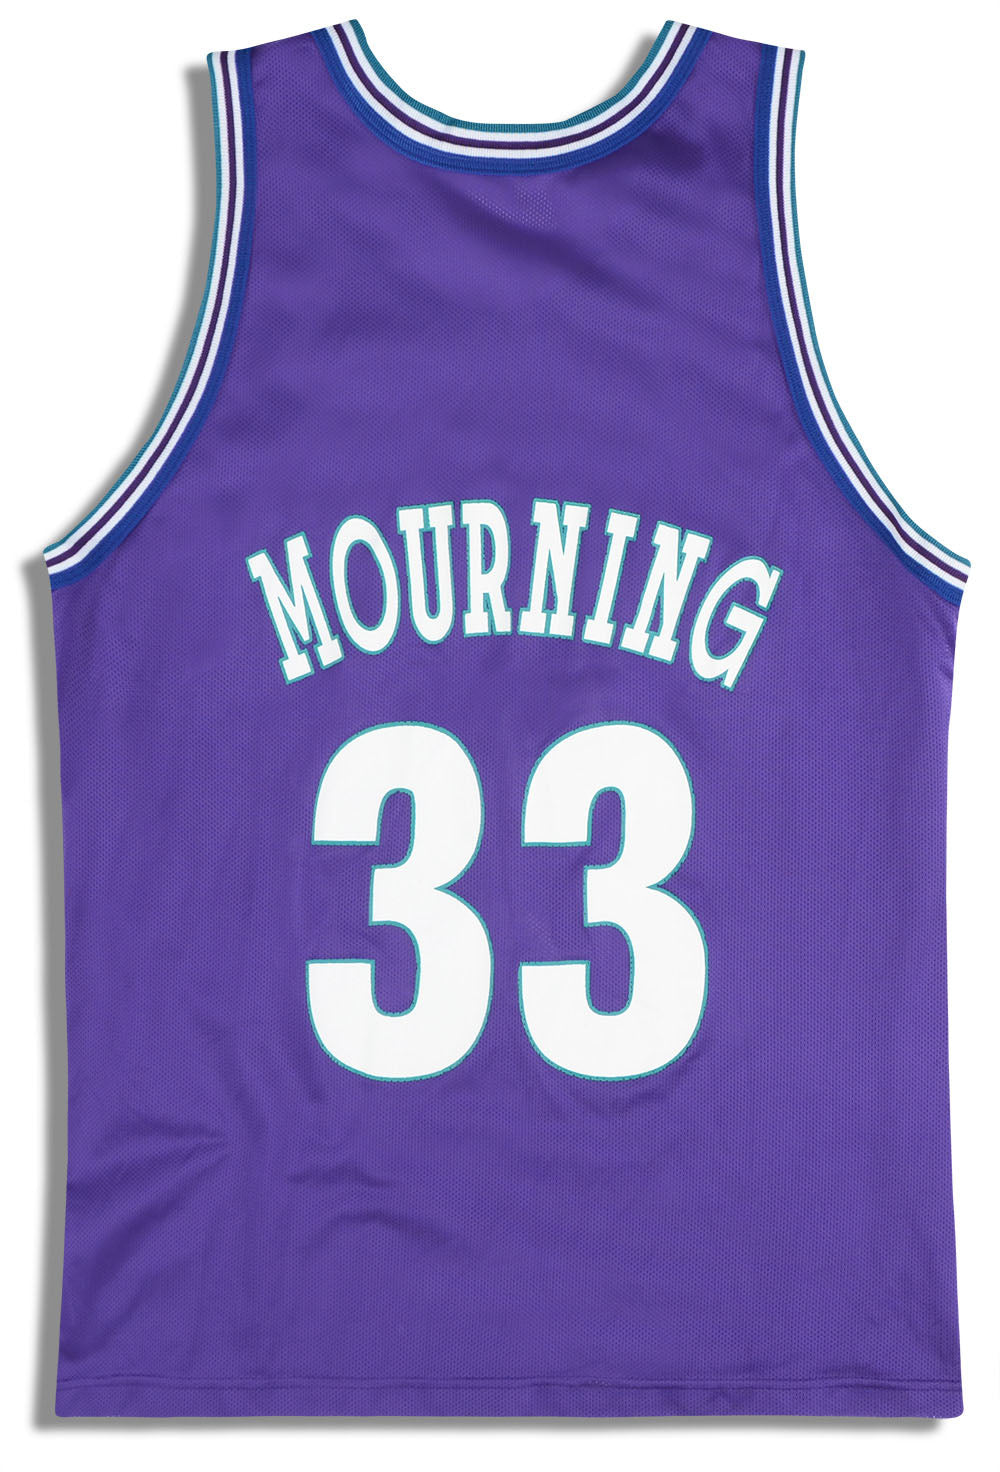 Mourning Named 1st on Hornets 30th Anniversary Team – Charlotte Hornets